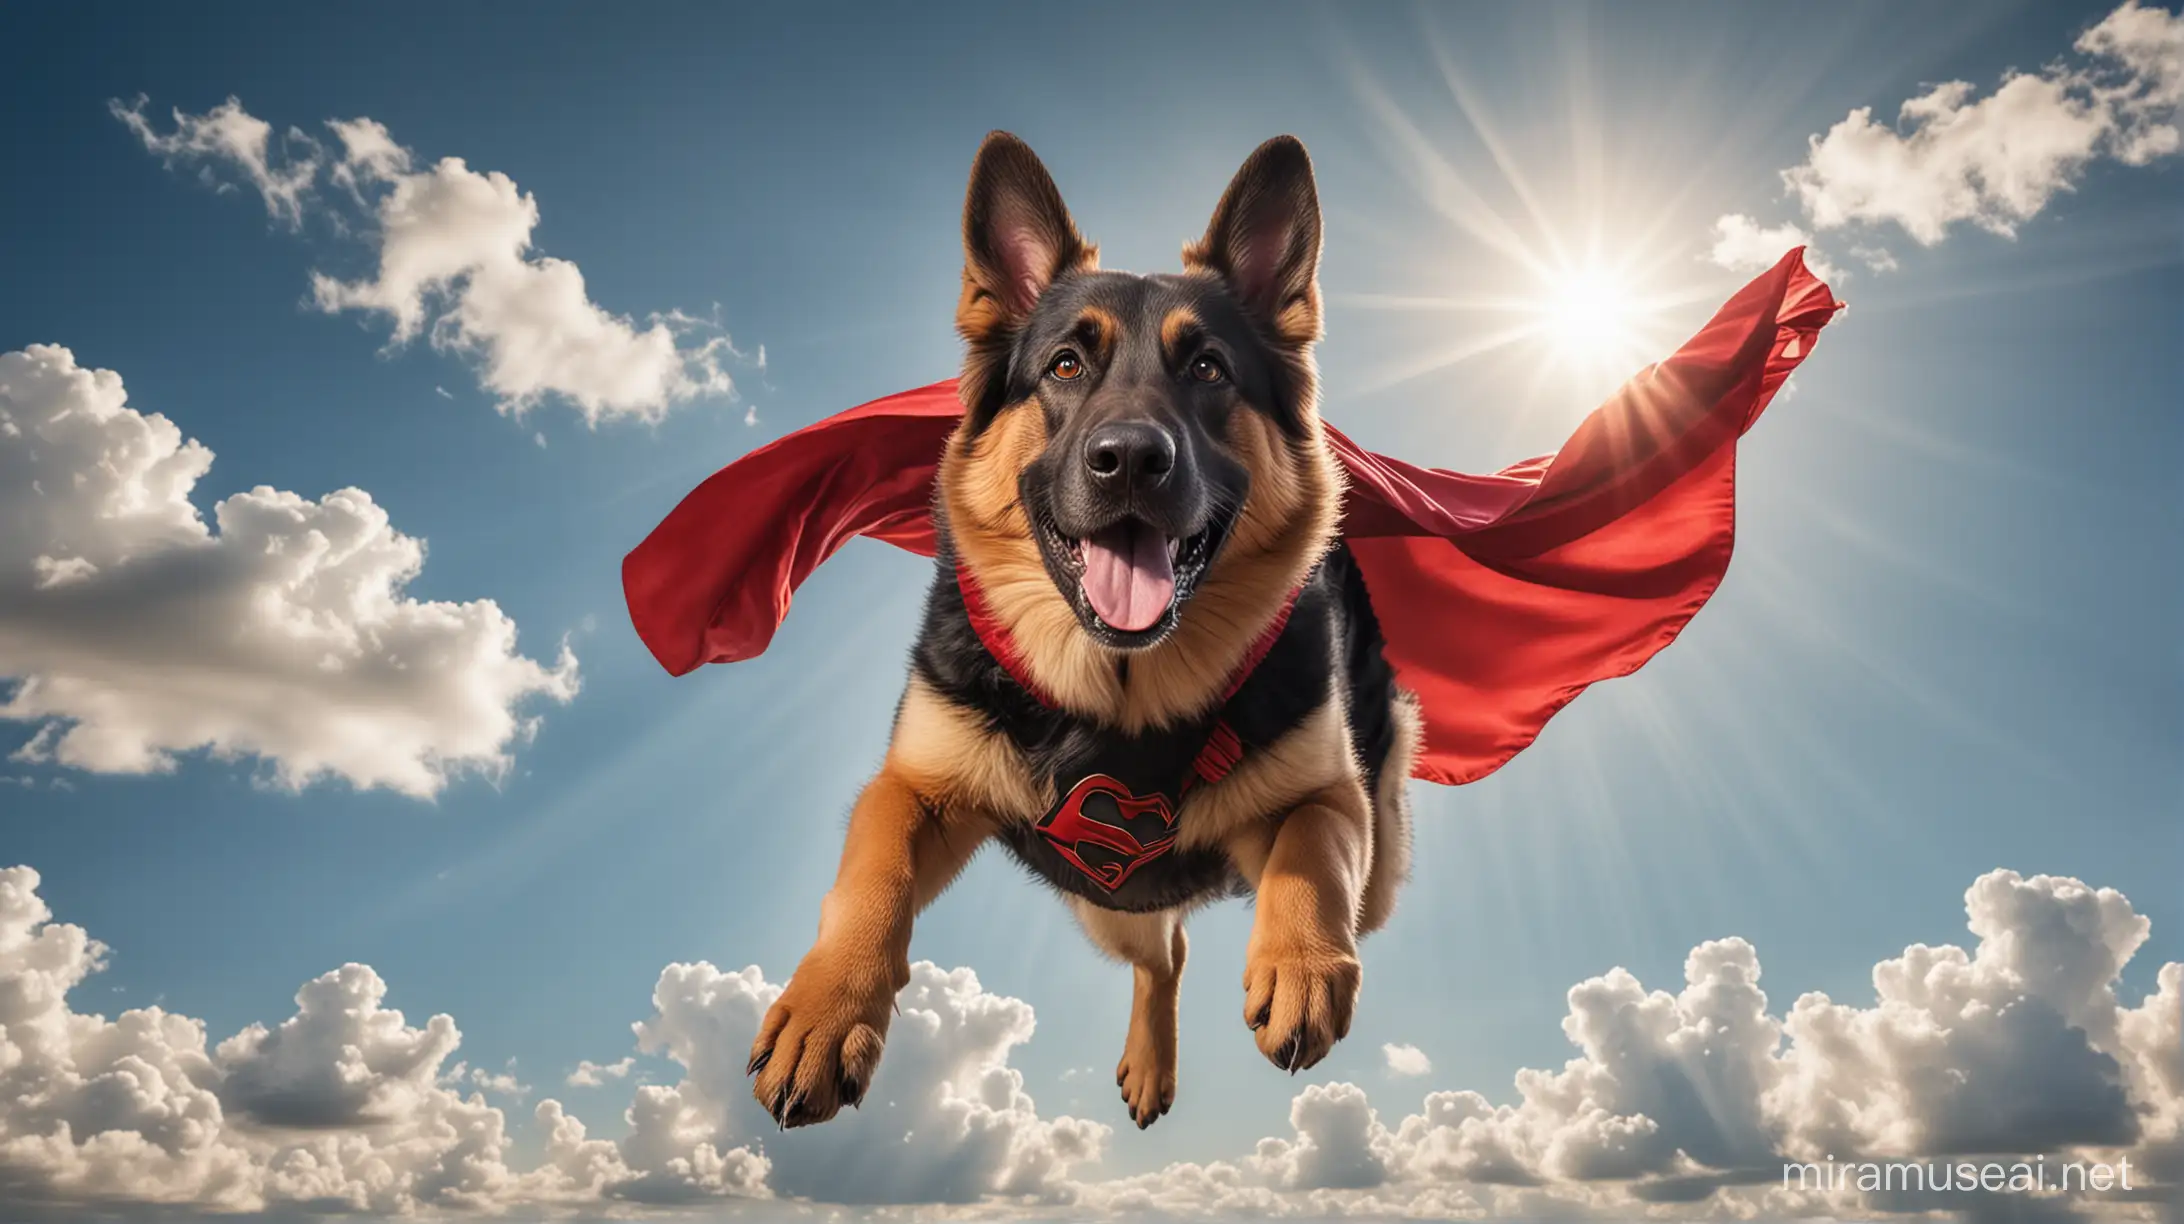 Fearless German Shepherd Superhero Flying in Bright Blue Sky